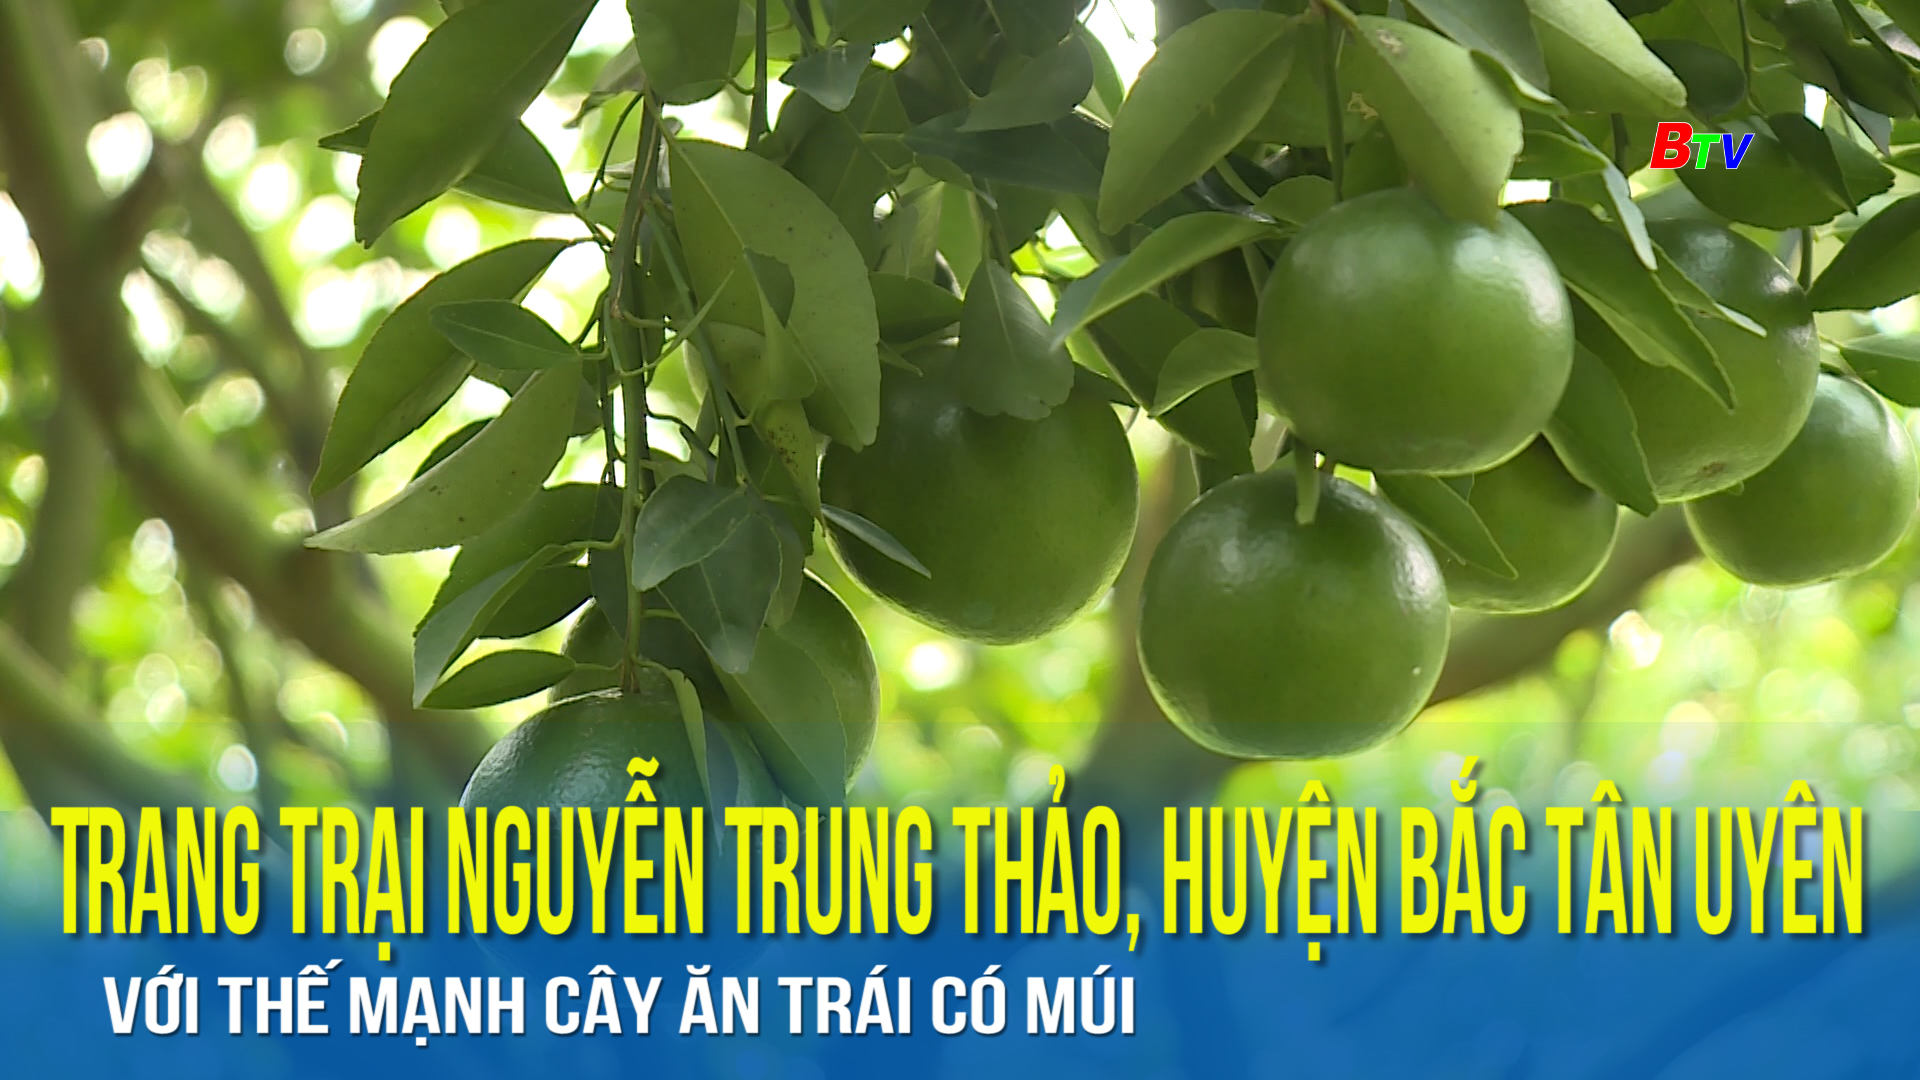 Trang trại Nguyễn Trung Thảo, huyện bắc Tân Uyên với thế mạnh cây ăn trái có múi